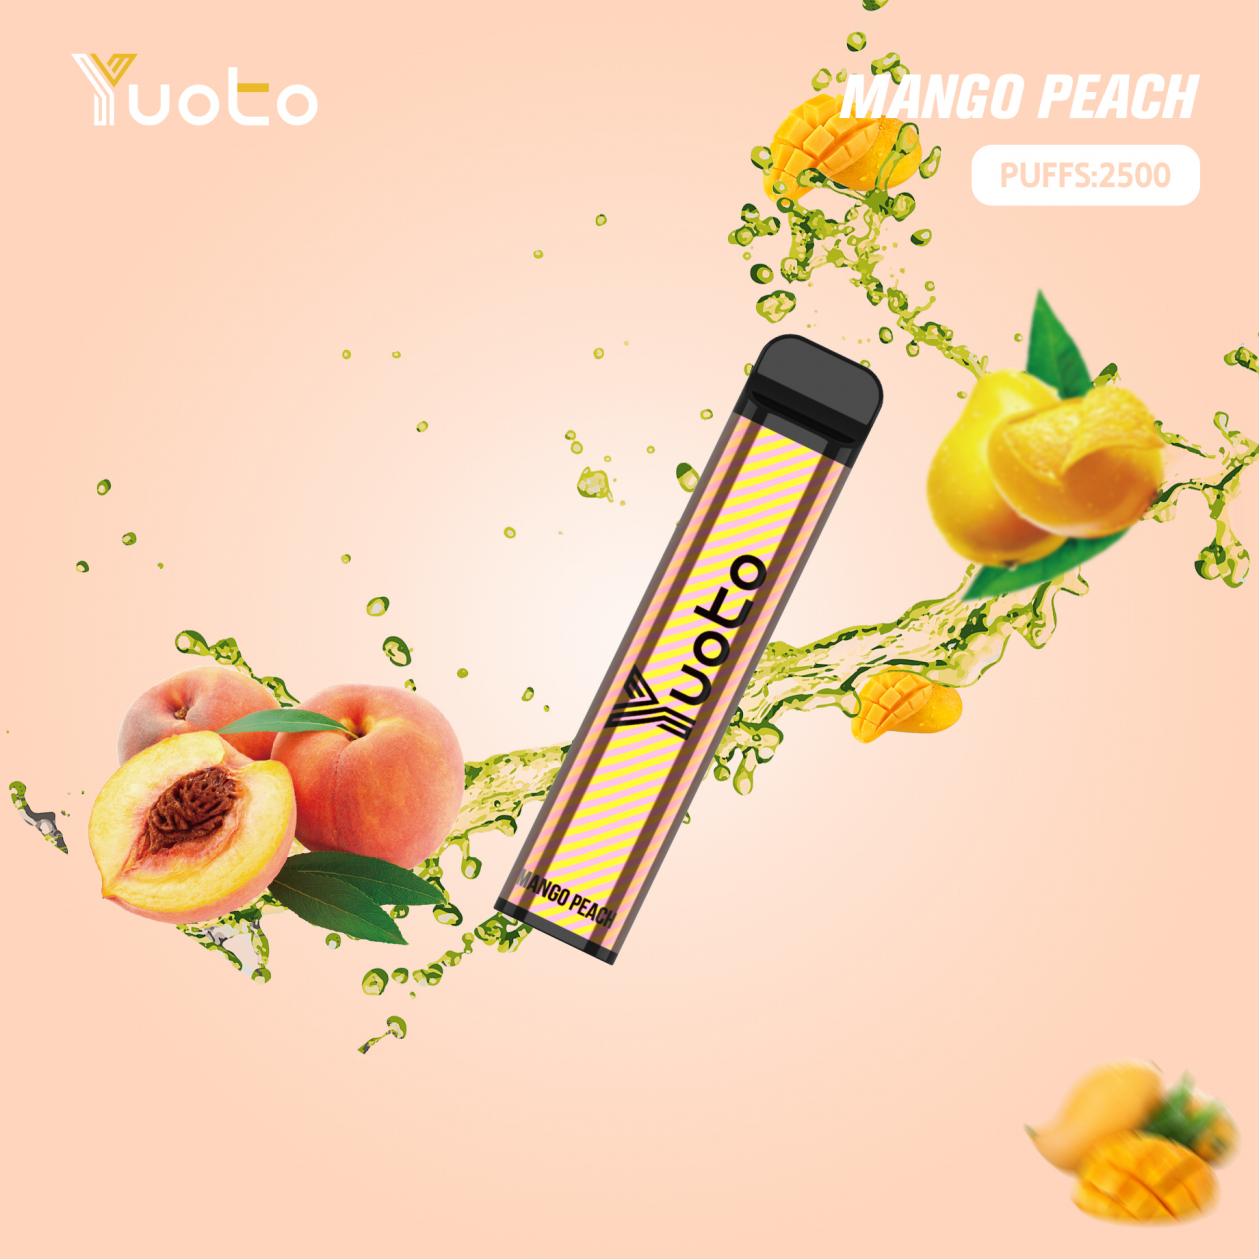 Yuoto XXL Mango Peach - en fruktig och uppfriskande smakupplevelse som kombinerar solmogna mangosötma med fräsch persikotouch. Upptäck den XXL-stora engångsenheten för en långvarig och bekväm användning, var som helst och när som helst."